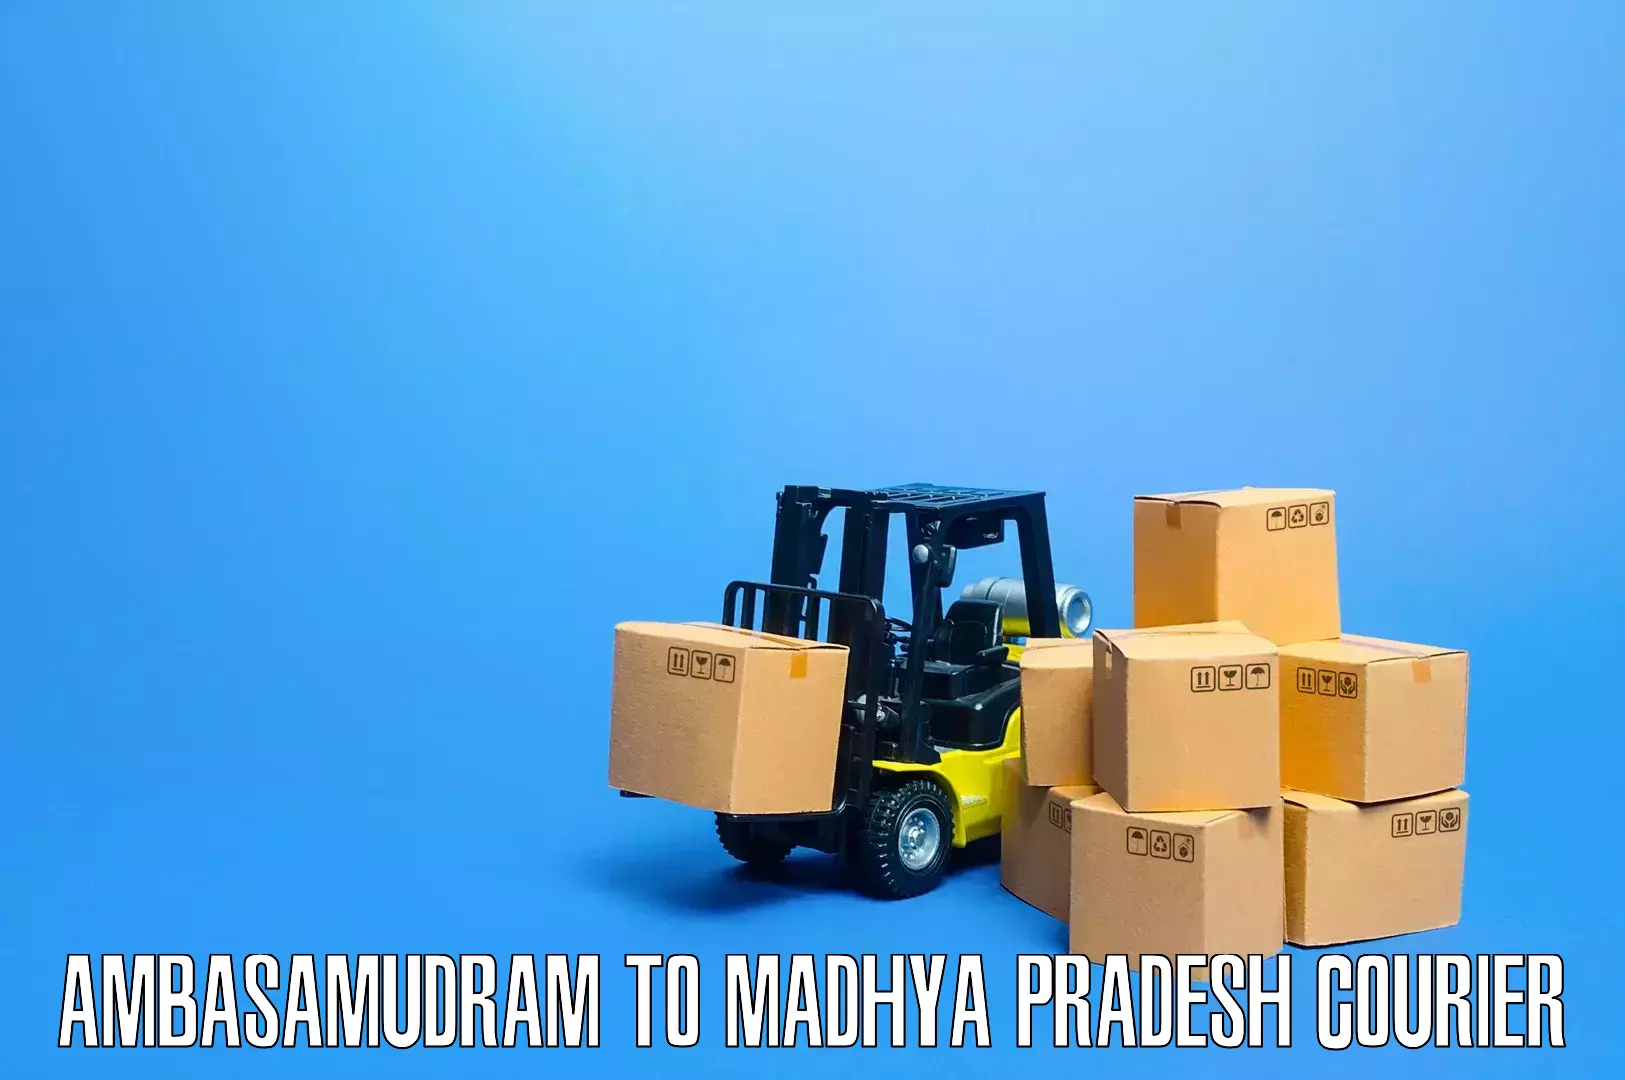 Furniture moving experts Ambasamudram to Silwani